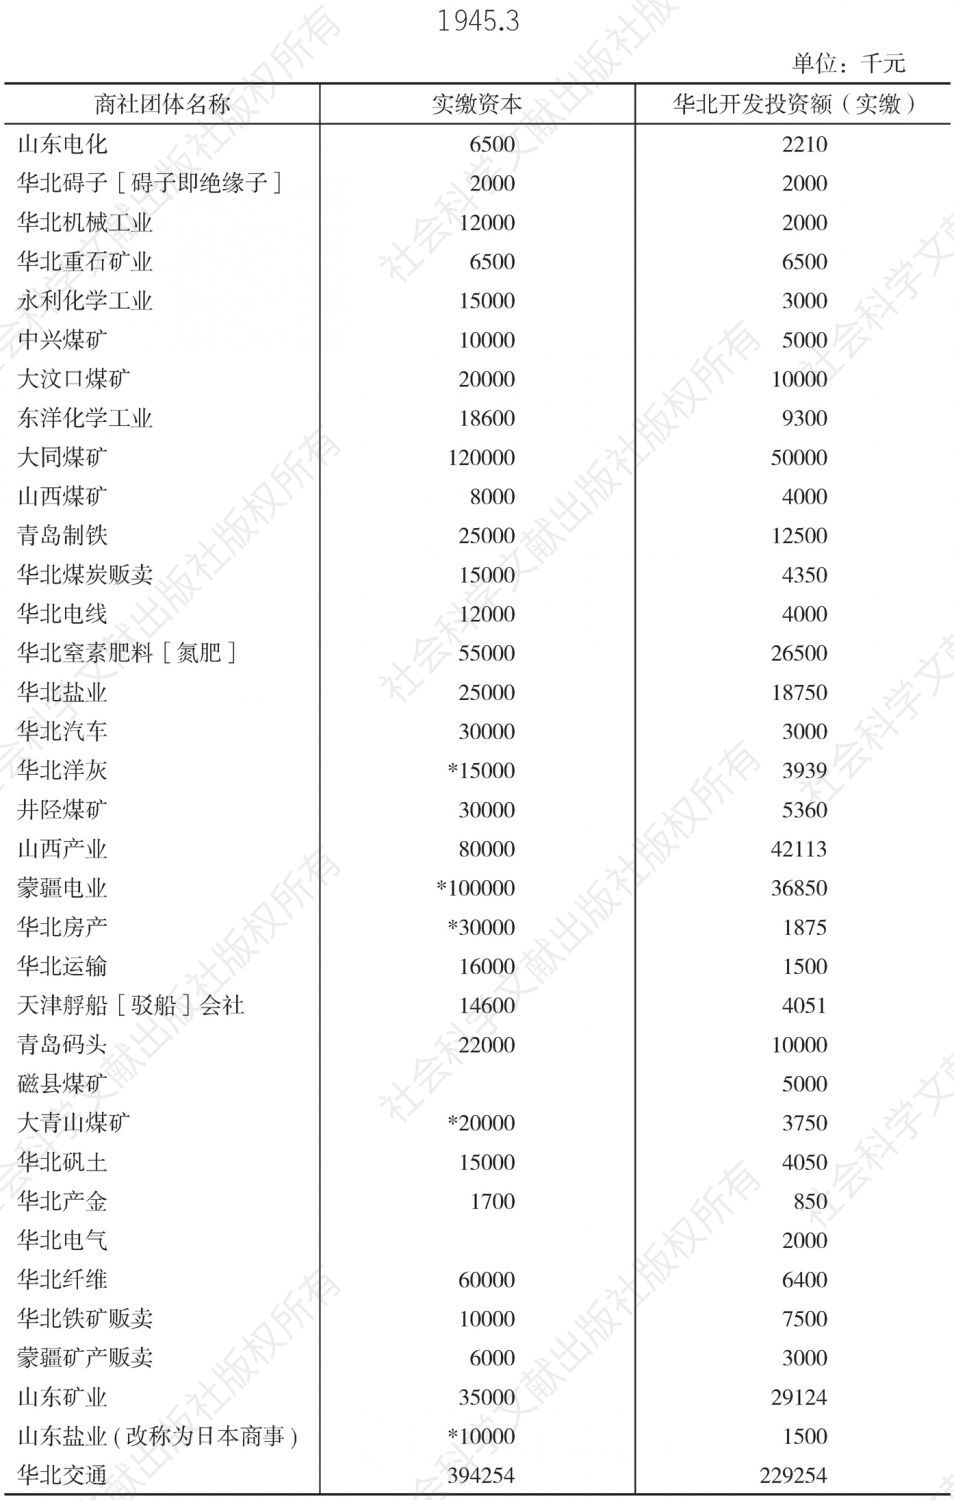 华北开发会社投资商社团体一览表